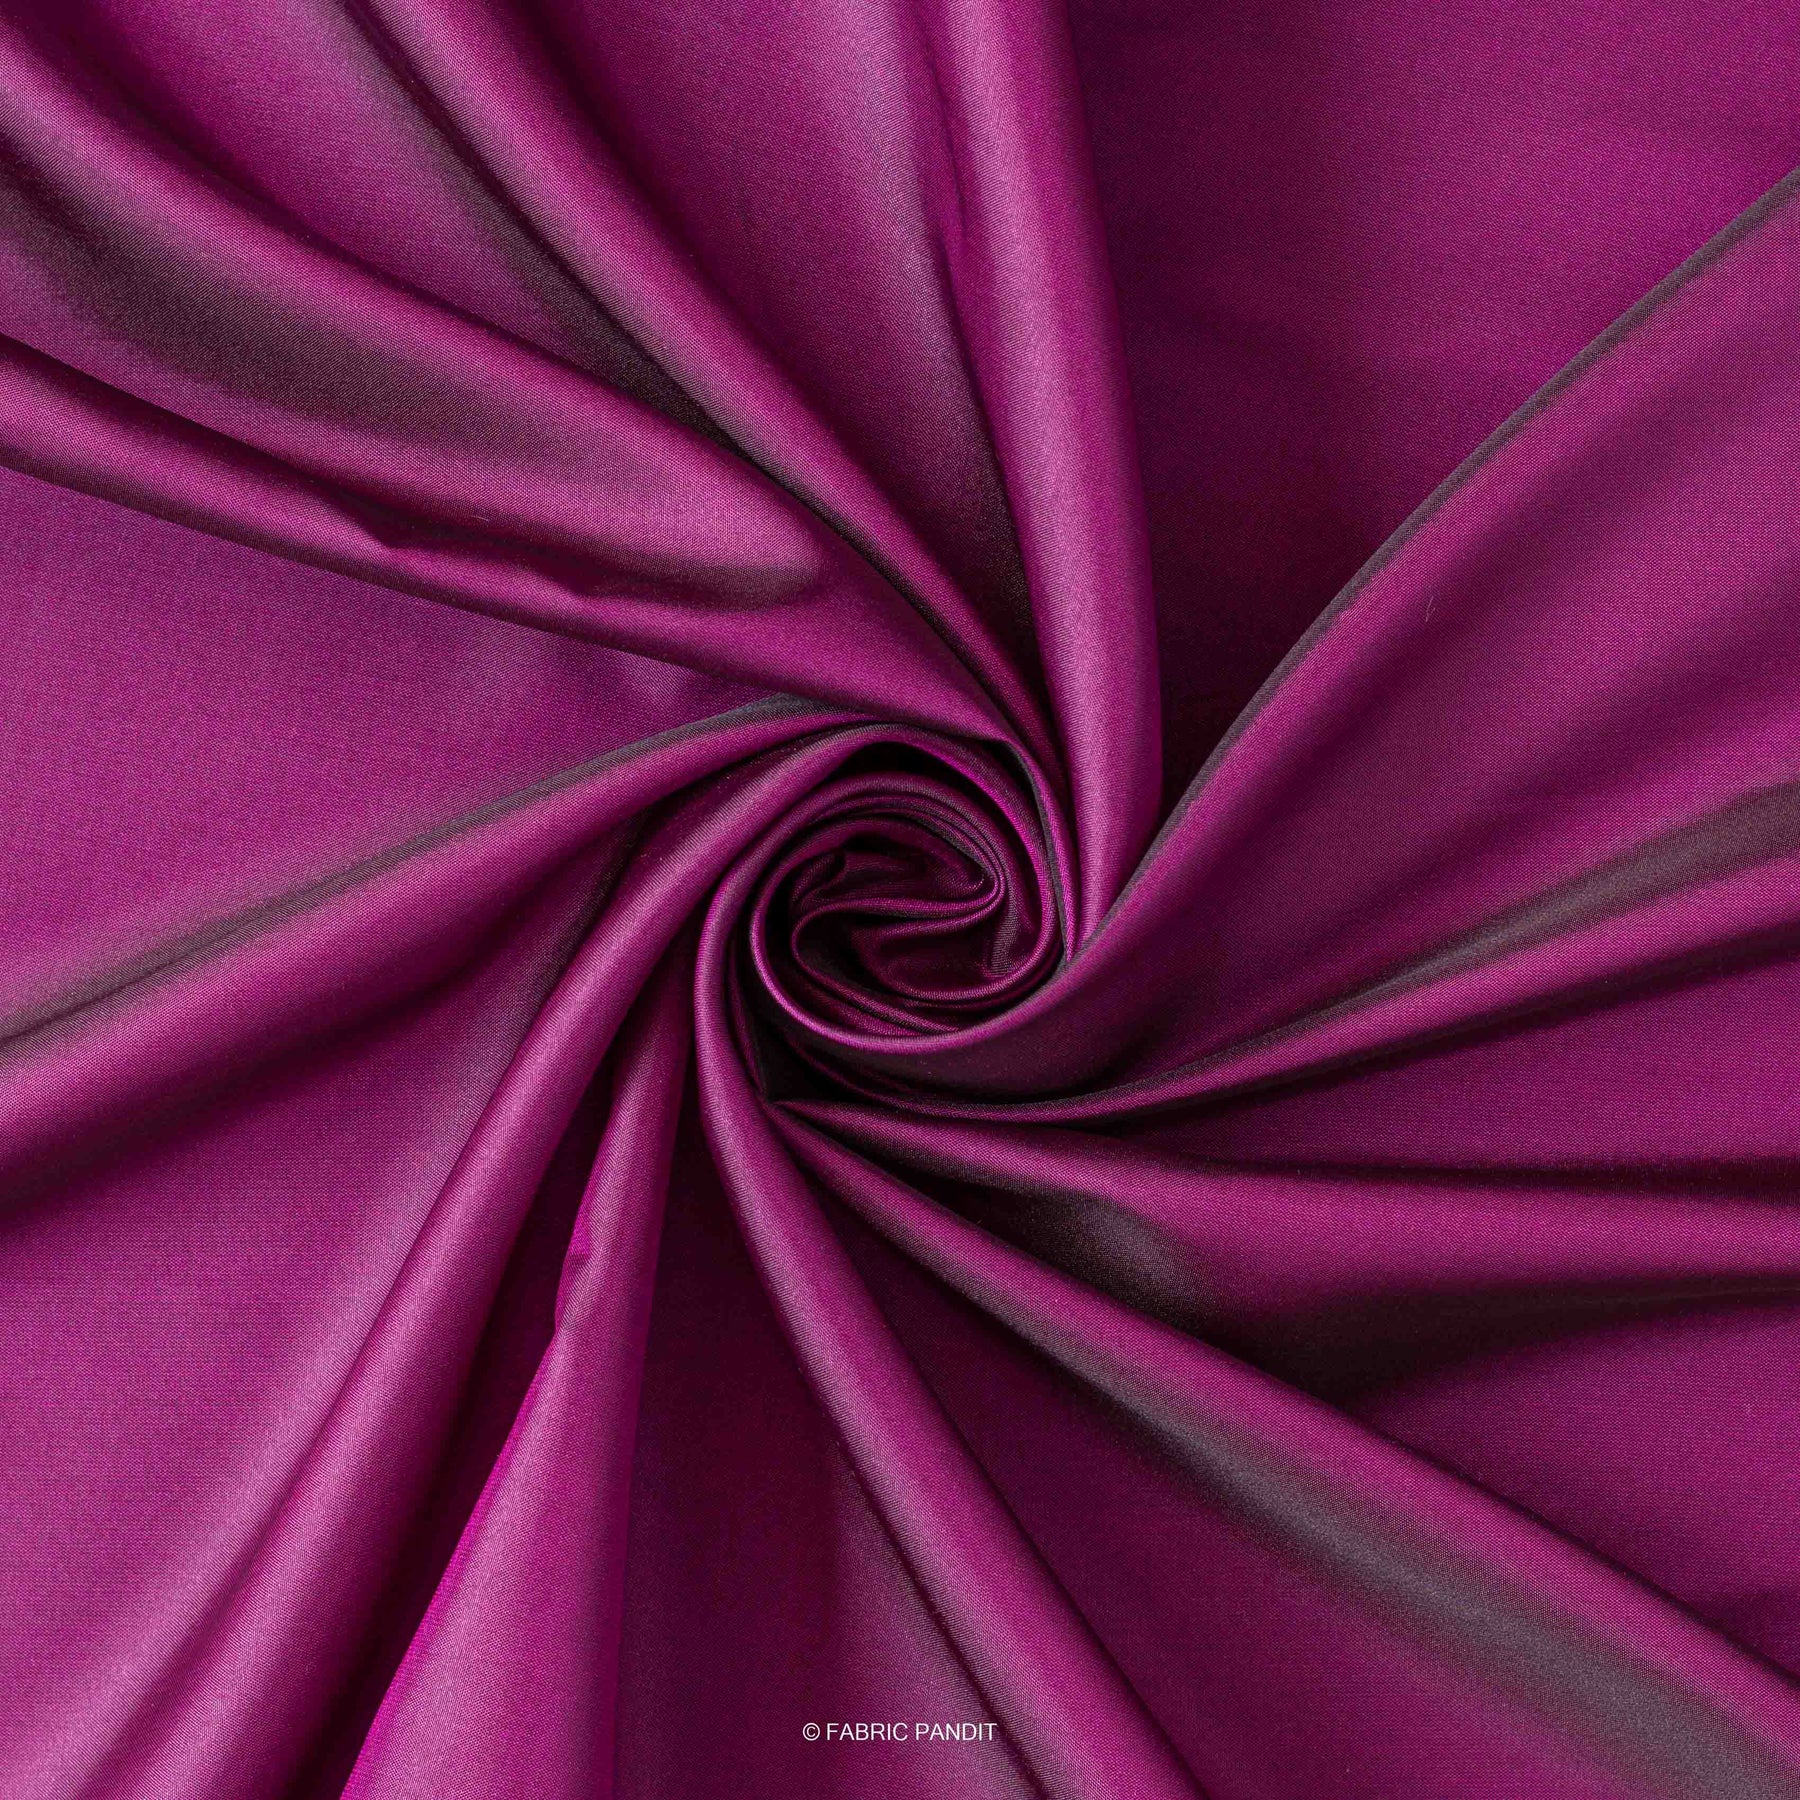 Red Tissue Taffeta Silk, 100% Silk Fabric By The Yard, 44 Wide